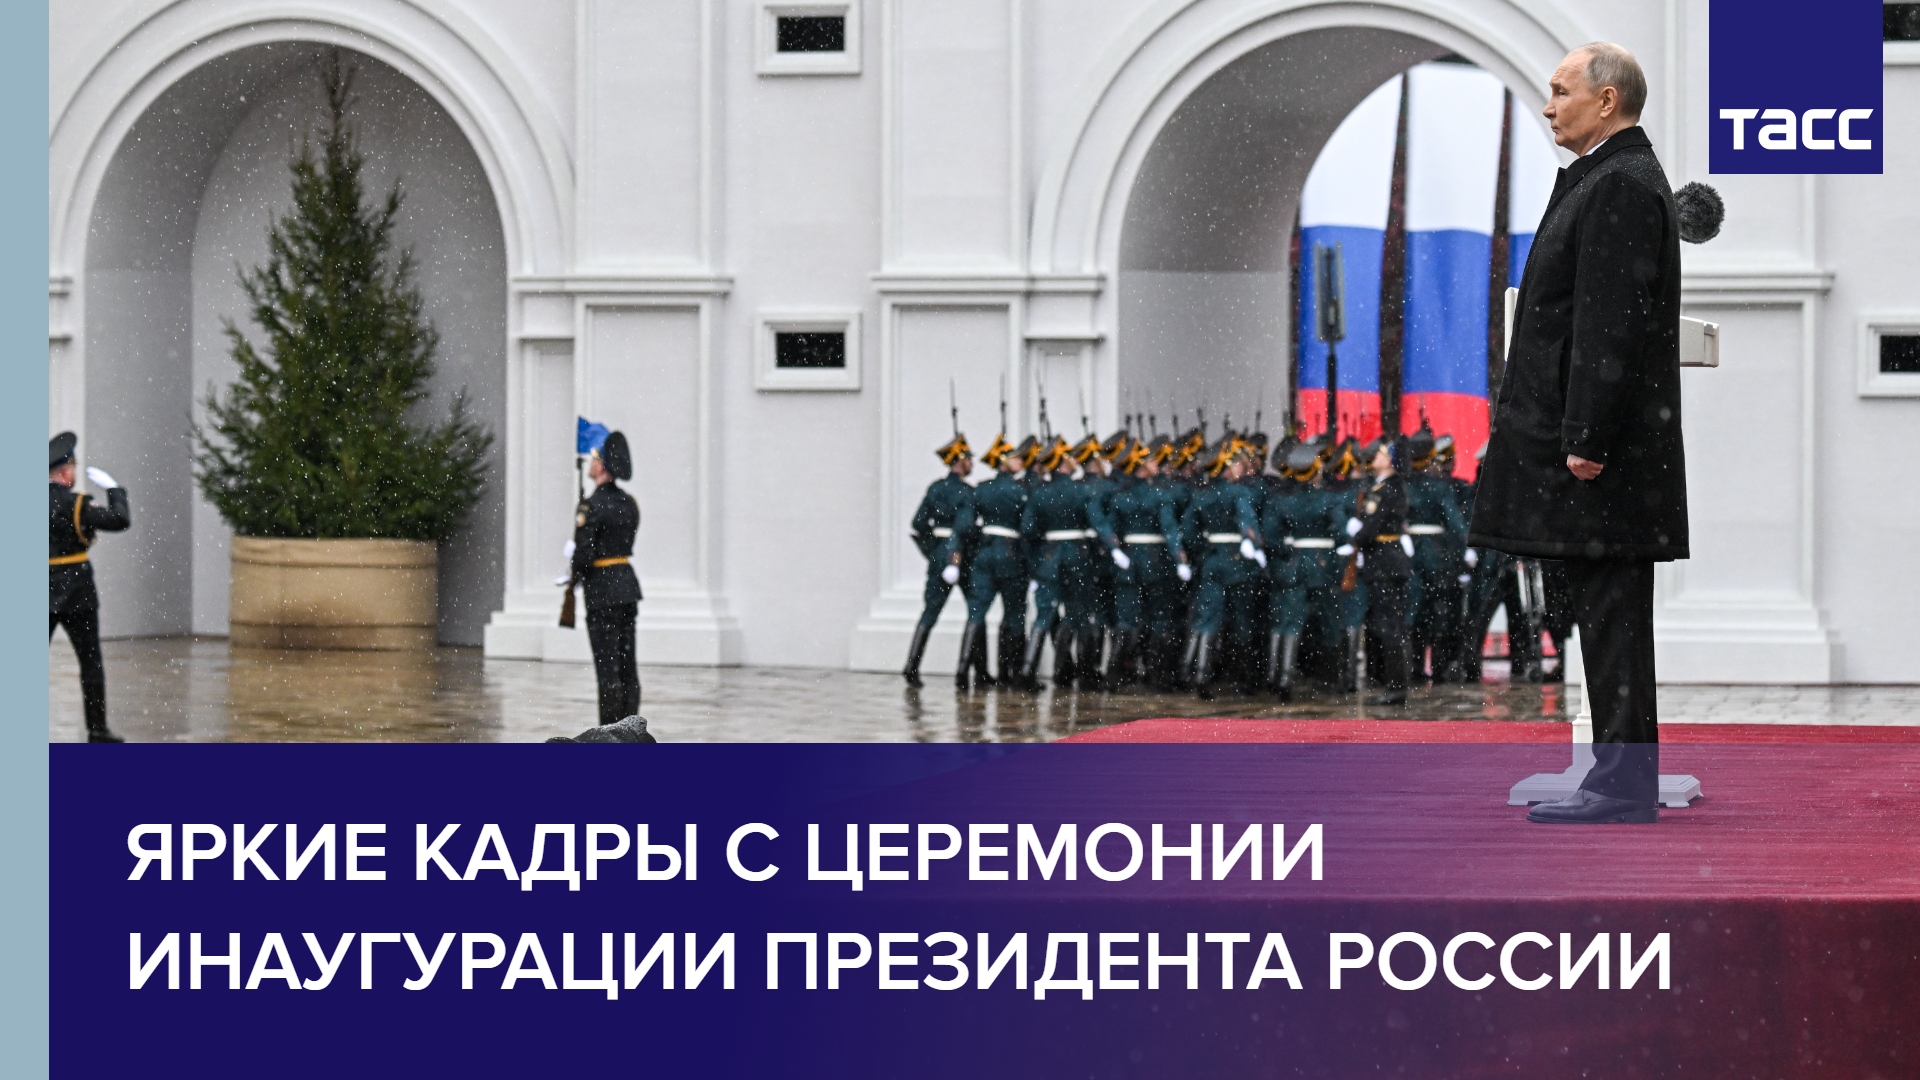 Яркие кадры с церемонии инаугурации президента России